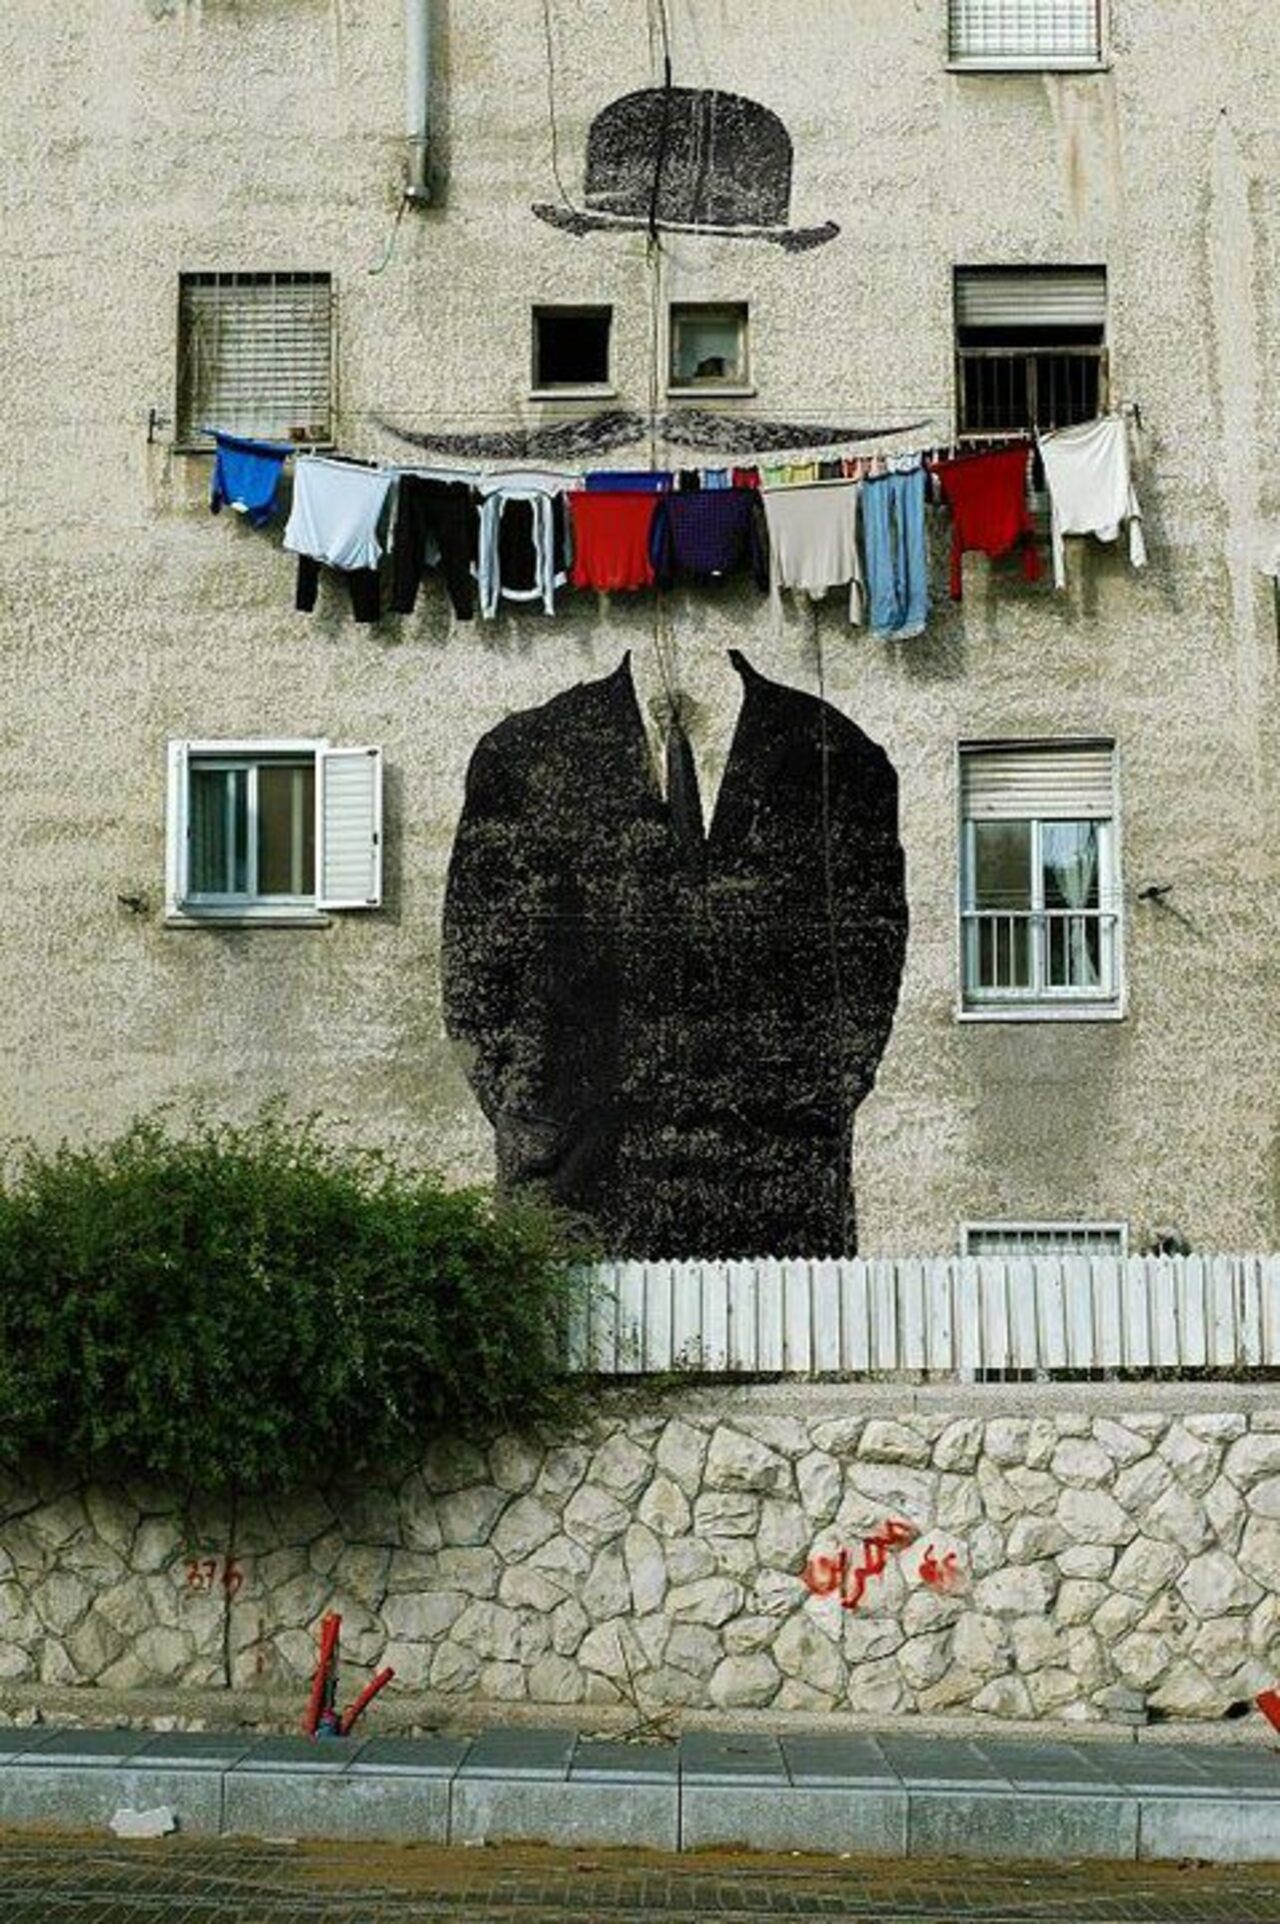 #Streetart #urbanart #graffiti #mural Clothing smile
 #Photographer Stingel https://t.co/VndrtwvInw